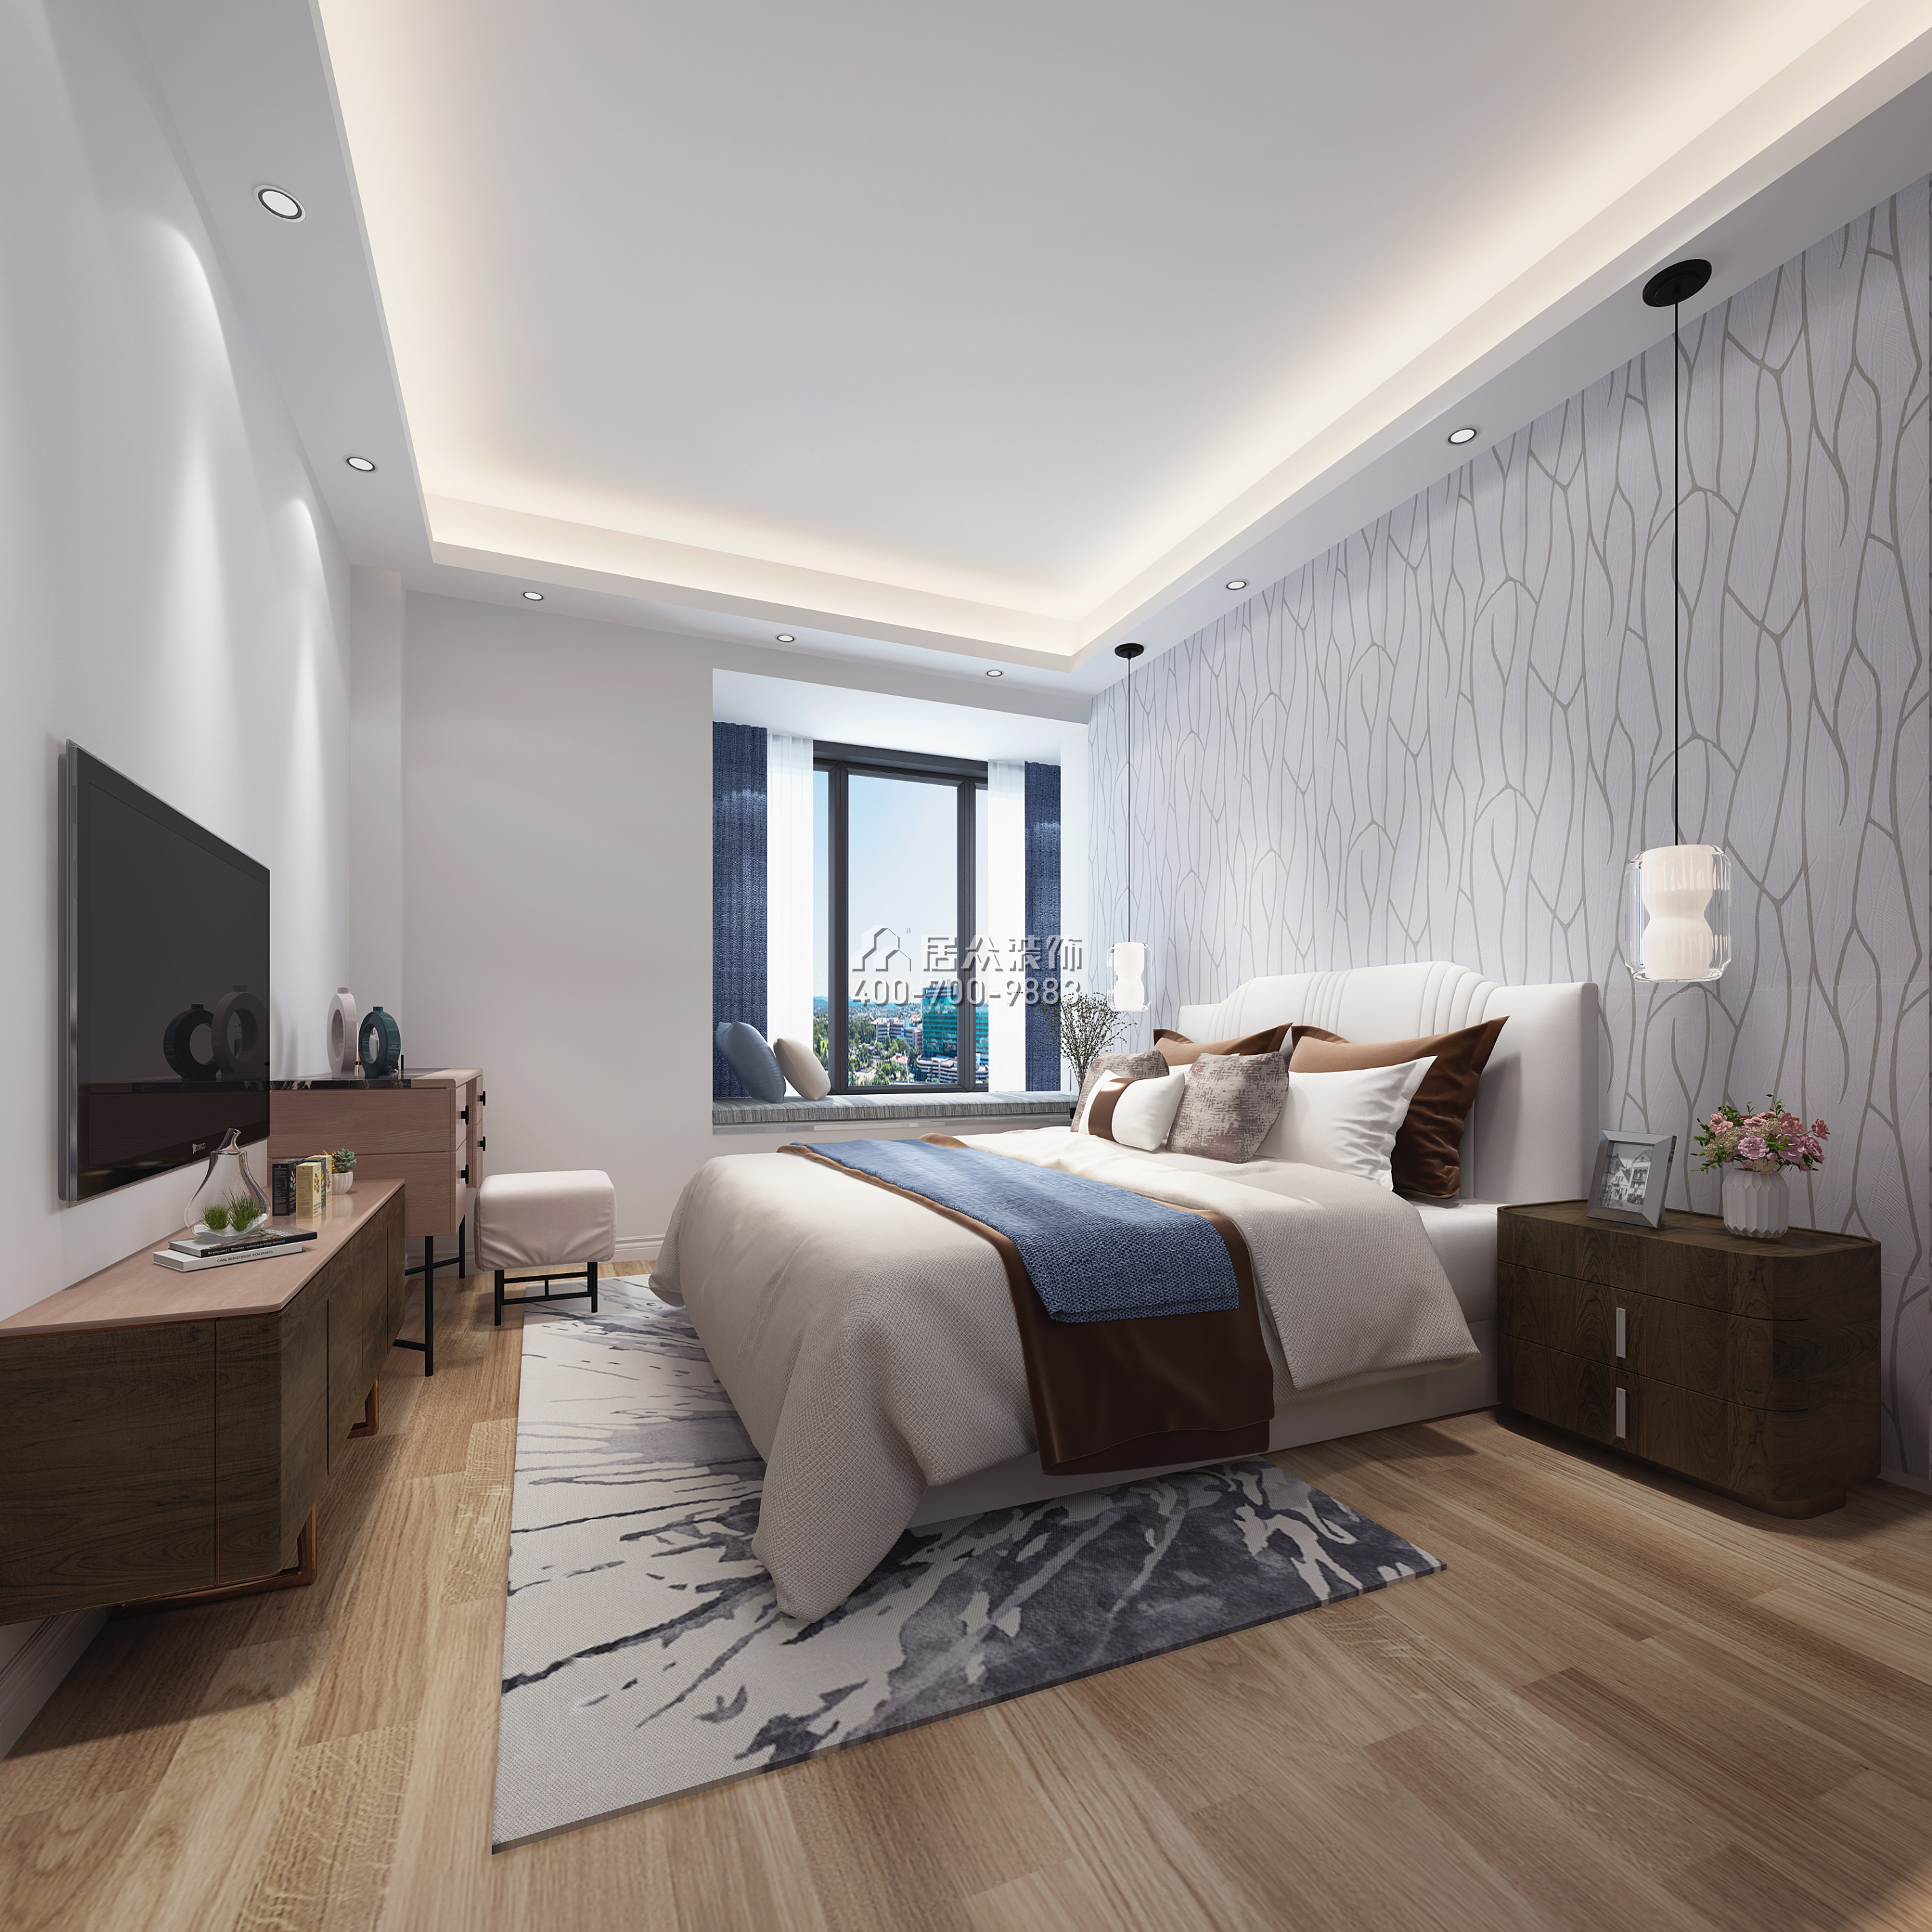 中骏蓝湾悦庭110平方米现代简约风格平层户型卧室装修效果图